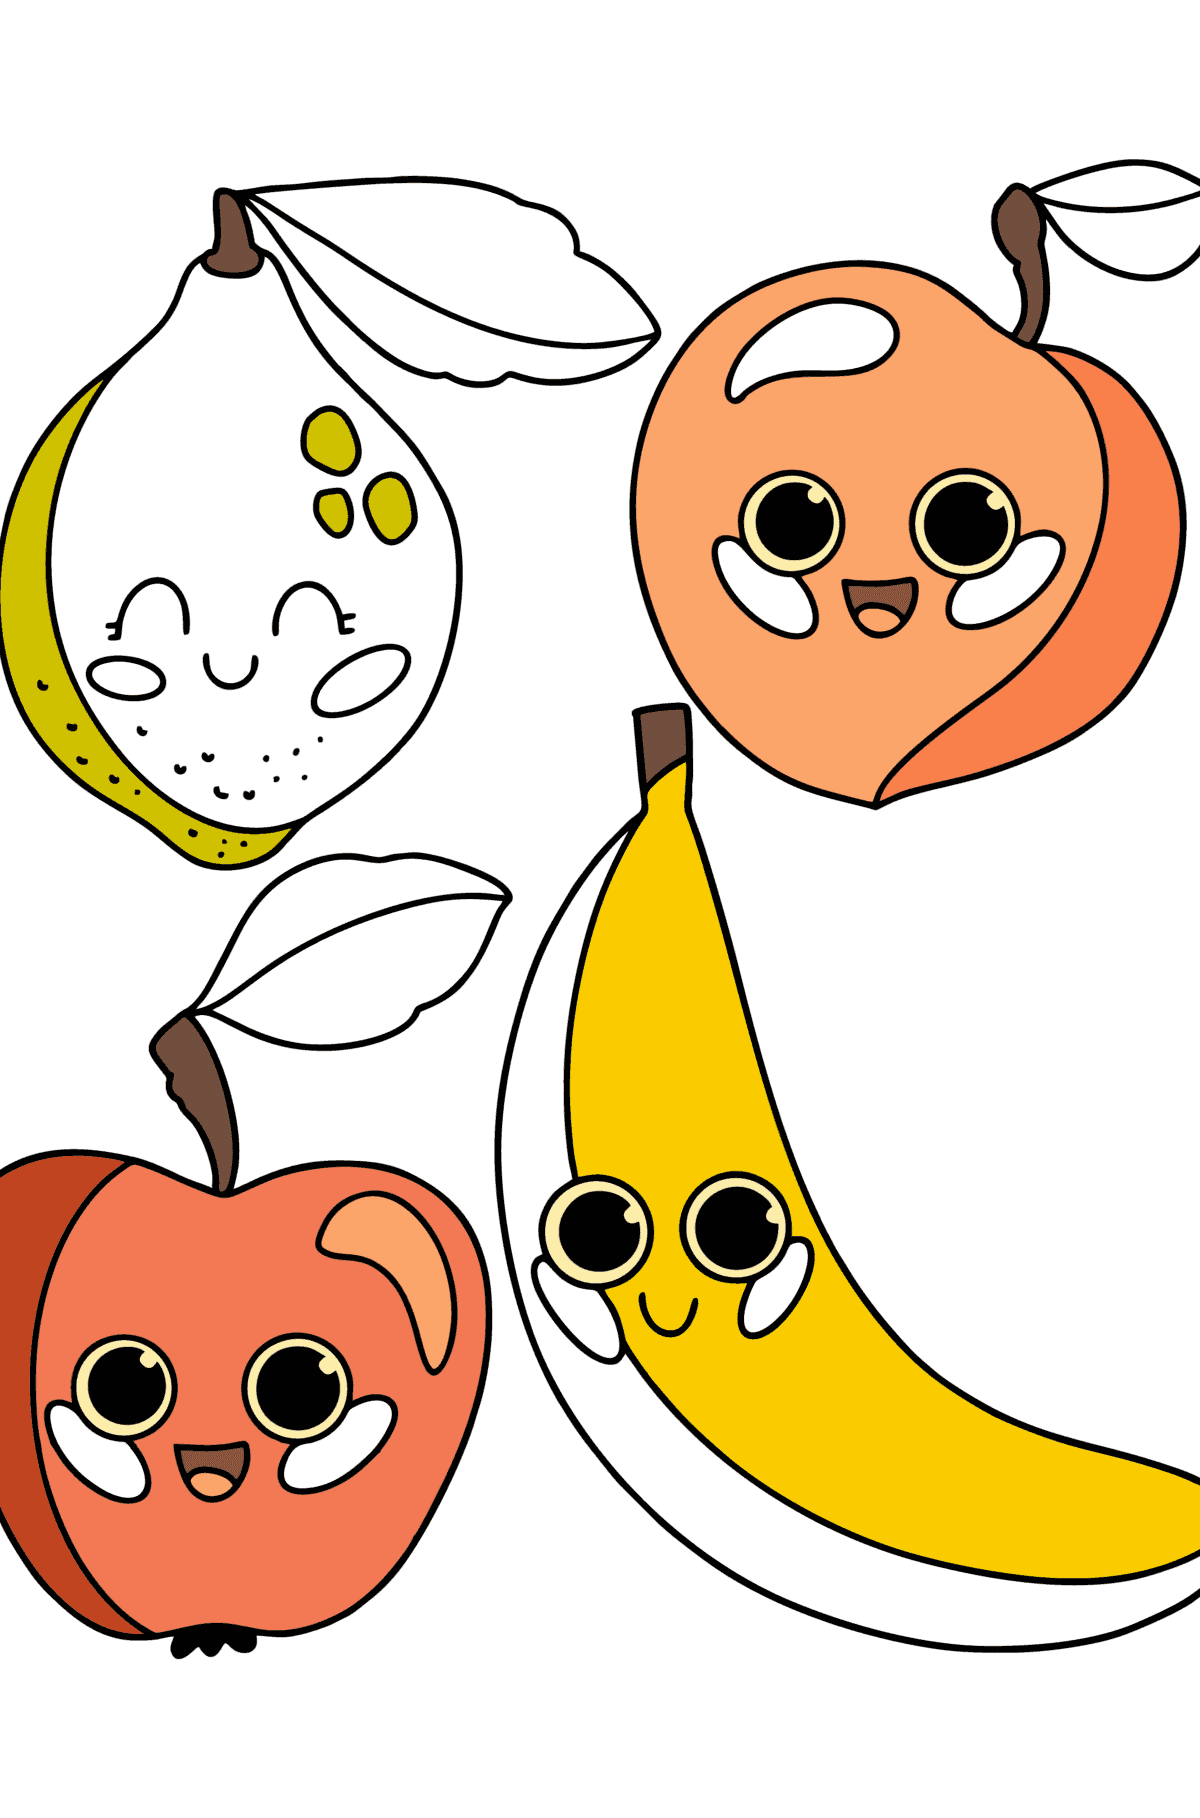 Målarbild Tecknade frukter - Målarbilder För barn